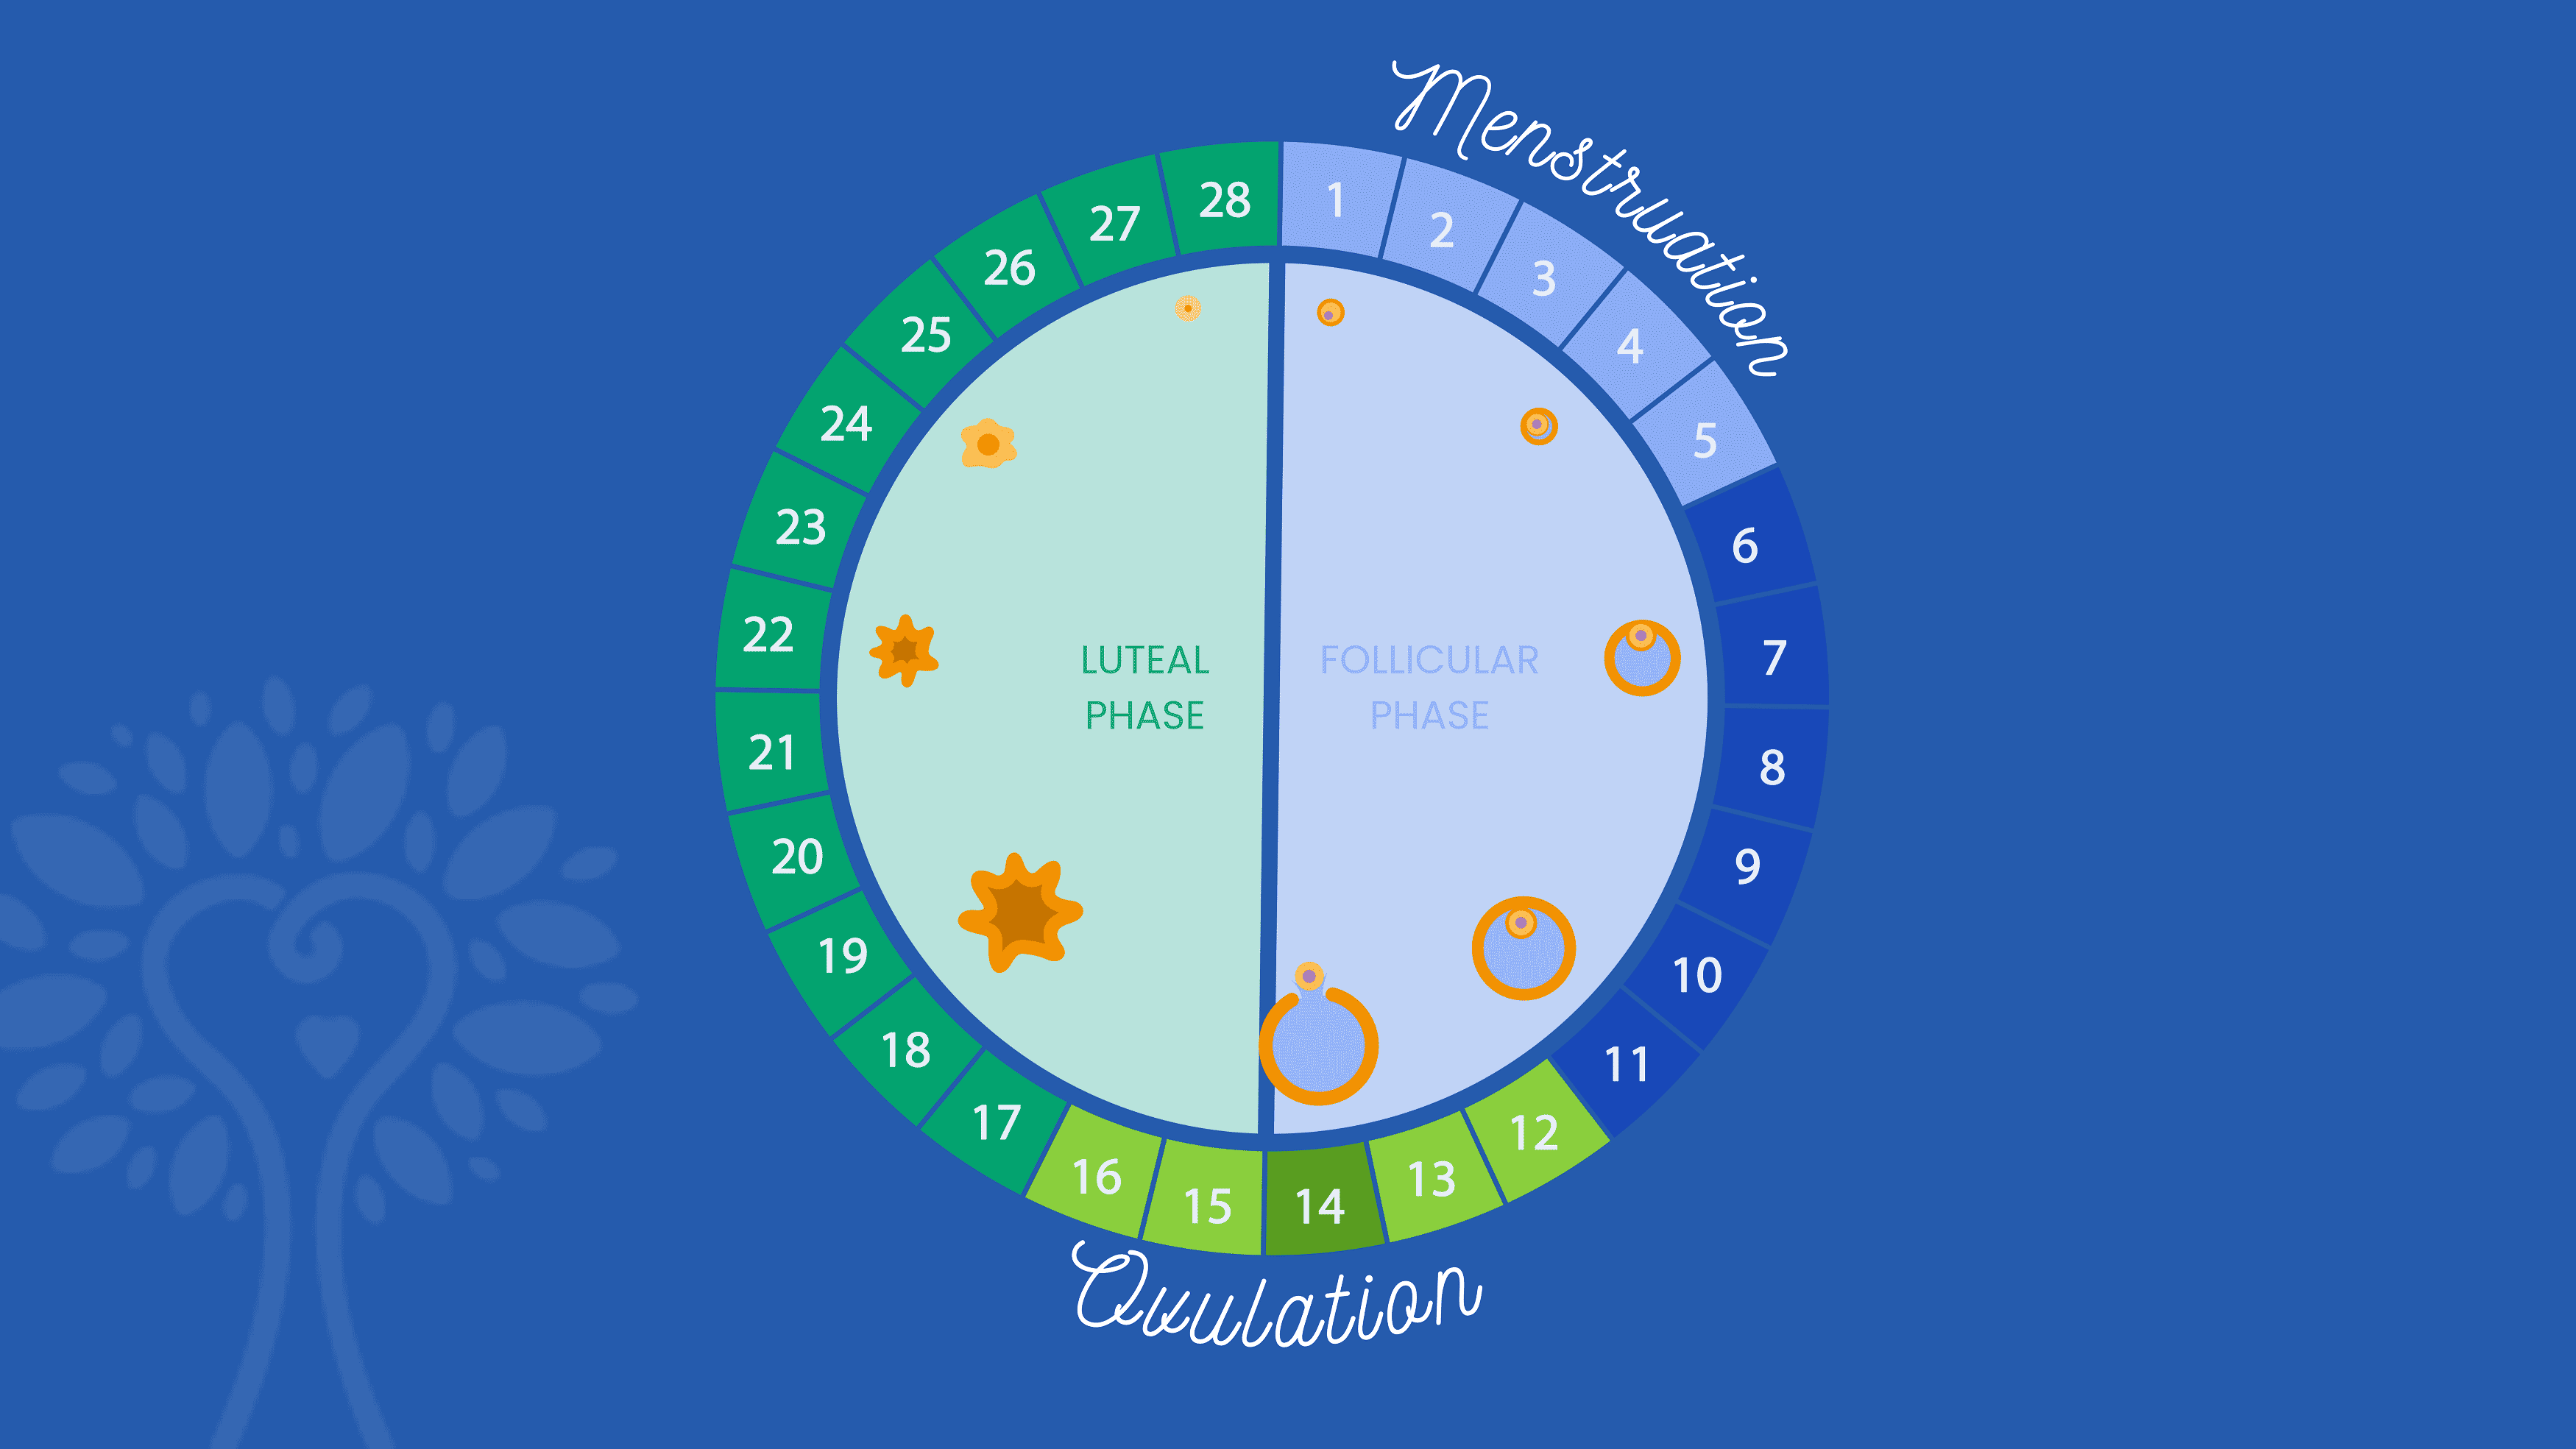 רקע כחול כהה עם לוח IVF עגול המראה את 28 הימים של מחזור הווסת כשהמילה "ווסת" משתרעת על ימים 1 עד 5 והמילה "ביוץ" משתרעת על ימים 12 עד 16. המספרים נצבעים בגוונים שונים של כחול וירוק לפי השלב שלהם.